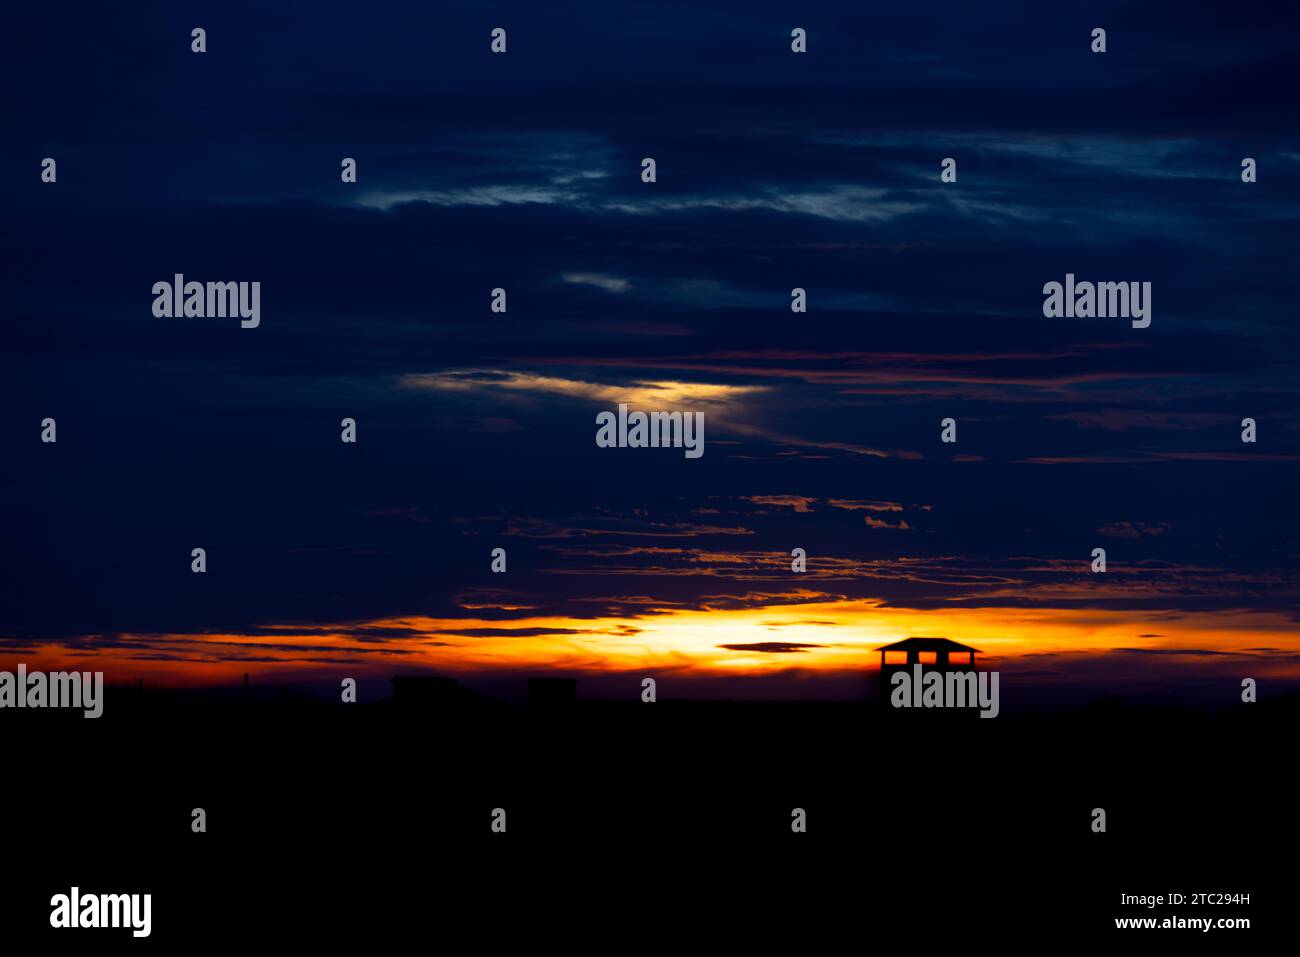 Sonnenuntergang Himmel Hintergrund Panorama Konzept. Blick von oben auf den Horizont Abendhimmel bei Sonnenuntergang und Morgensonnenaufgang in der farbenfrohen Stadt mit Kopierraum. Leere schöne s Stockfoto